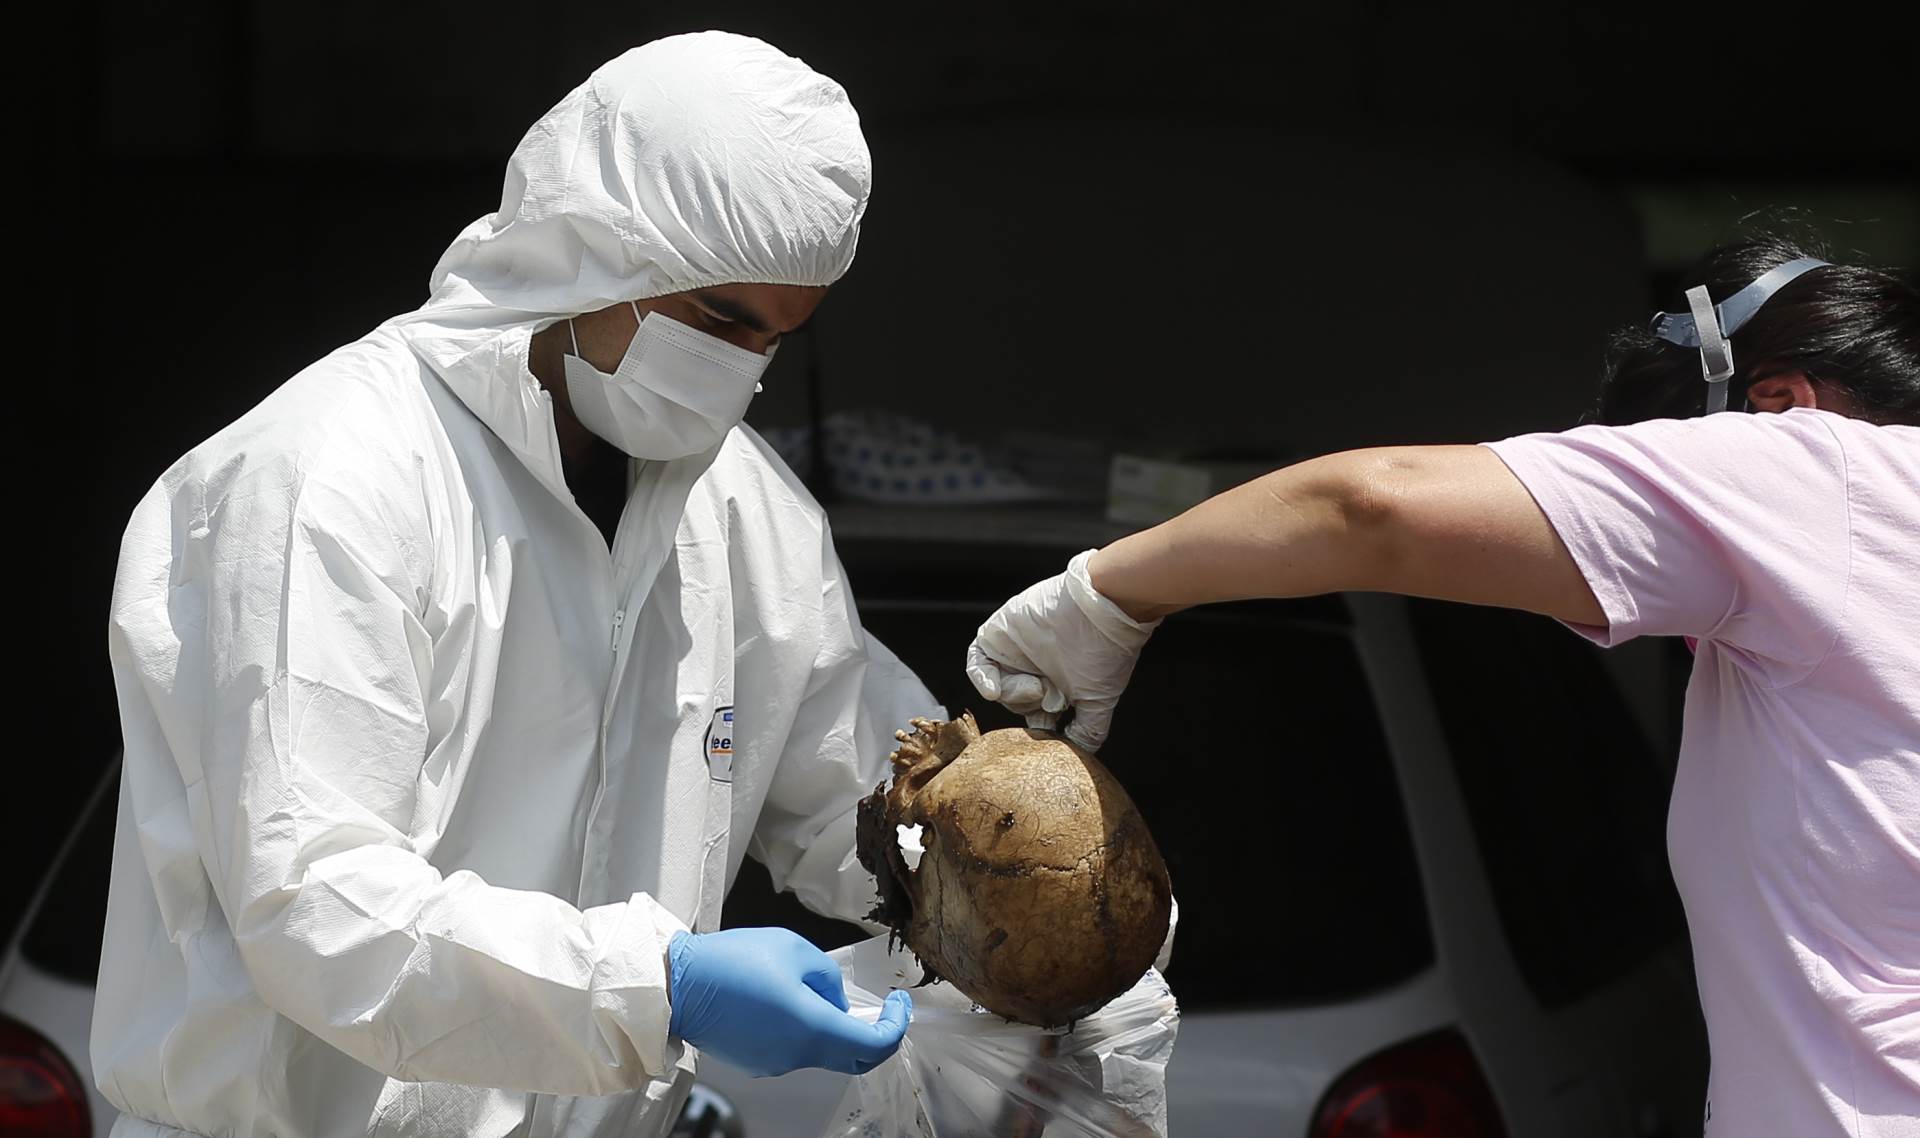  Identifikovana četiri tijela pronađena u Paragvaju u pošiljci iz Srbije 